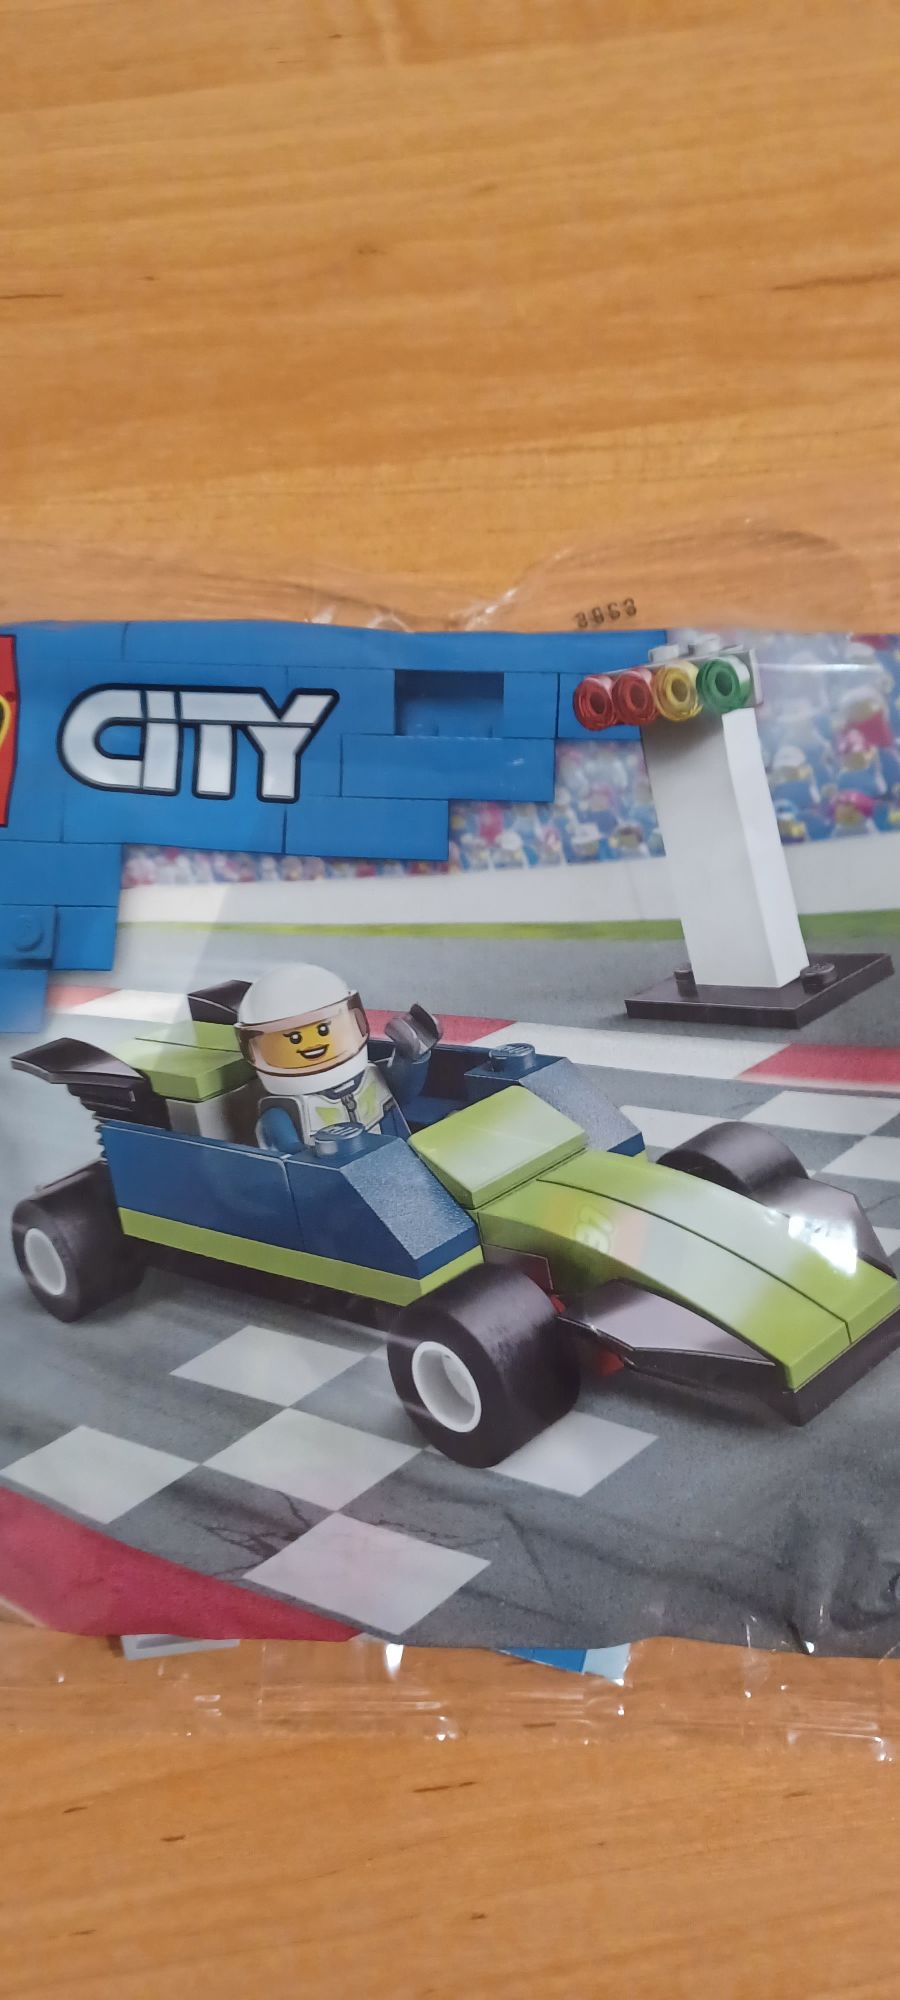 Lego CITY klocki